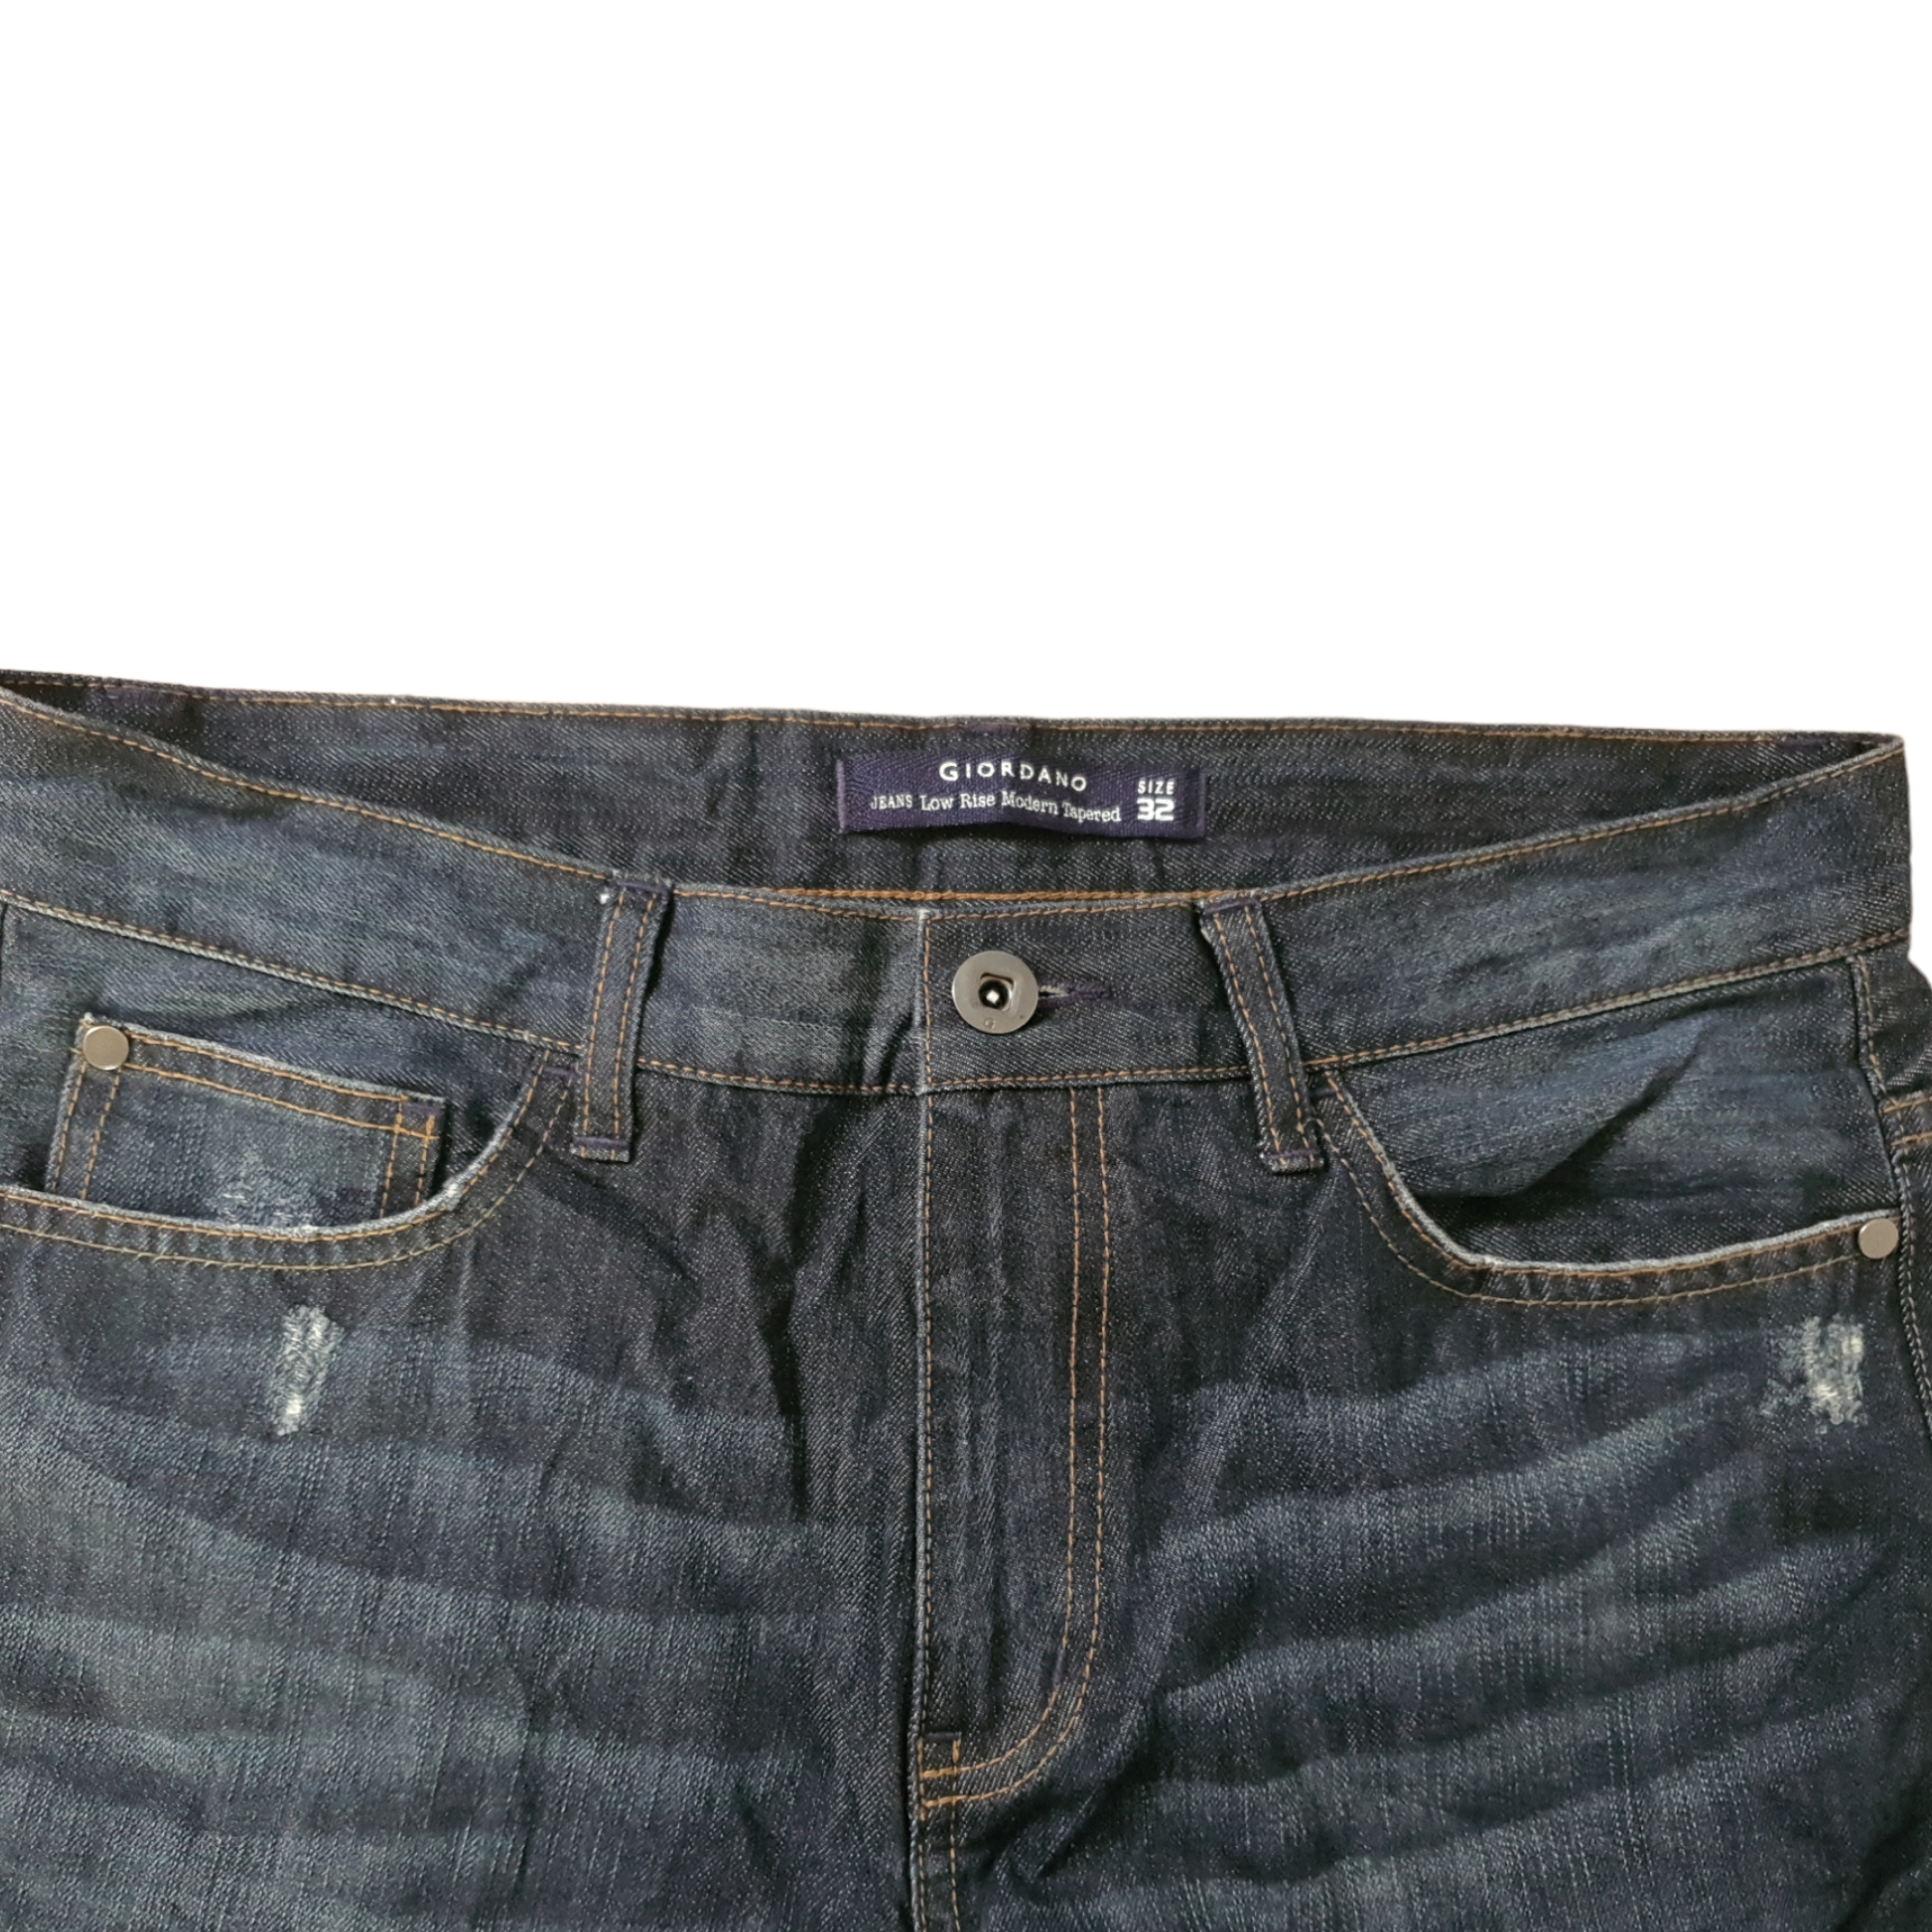 [33x30] Giordano Jeans